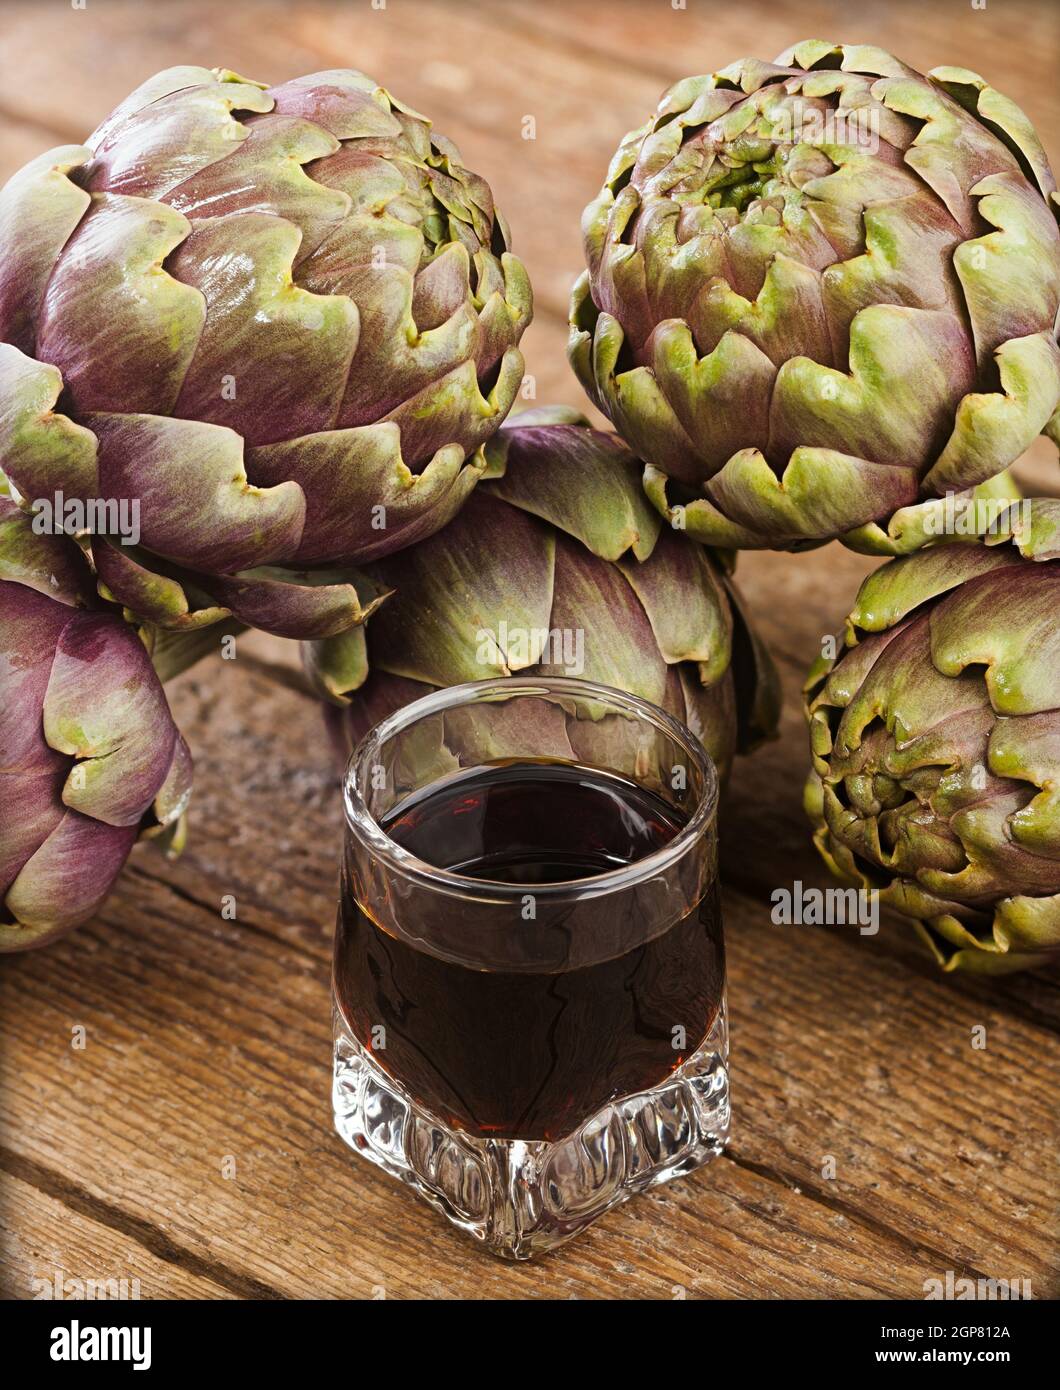 Boisson alcoolisée à l'extrait d'artichaut sur table en bois Photo Stock -  Alamy